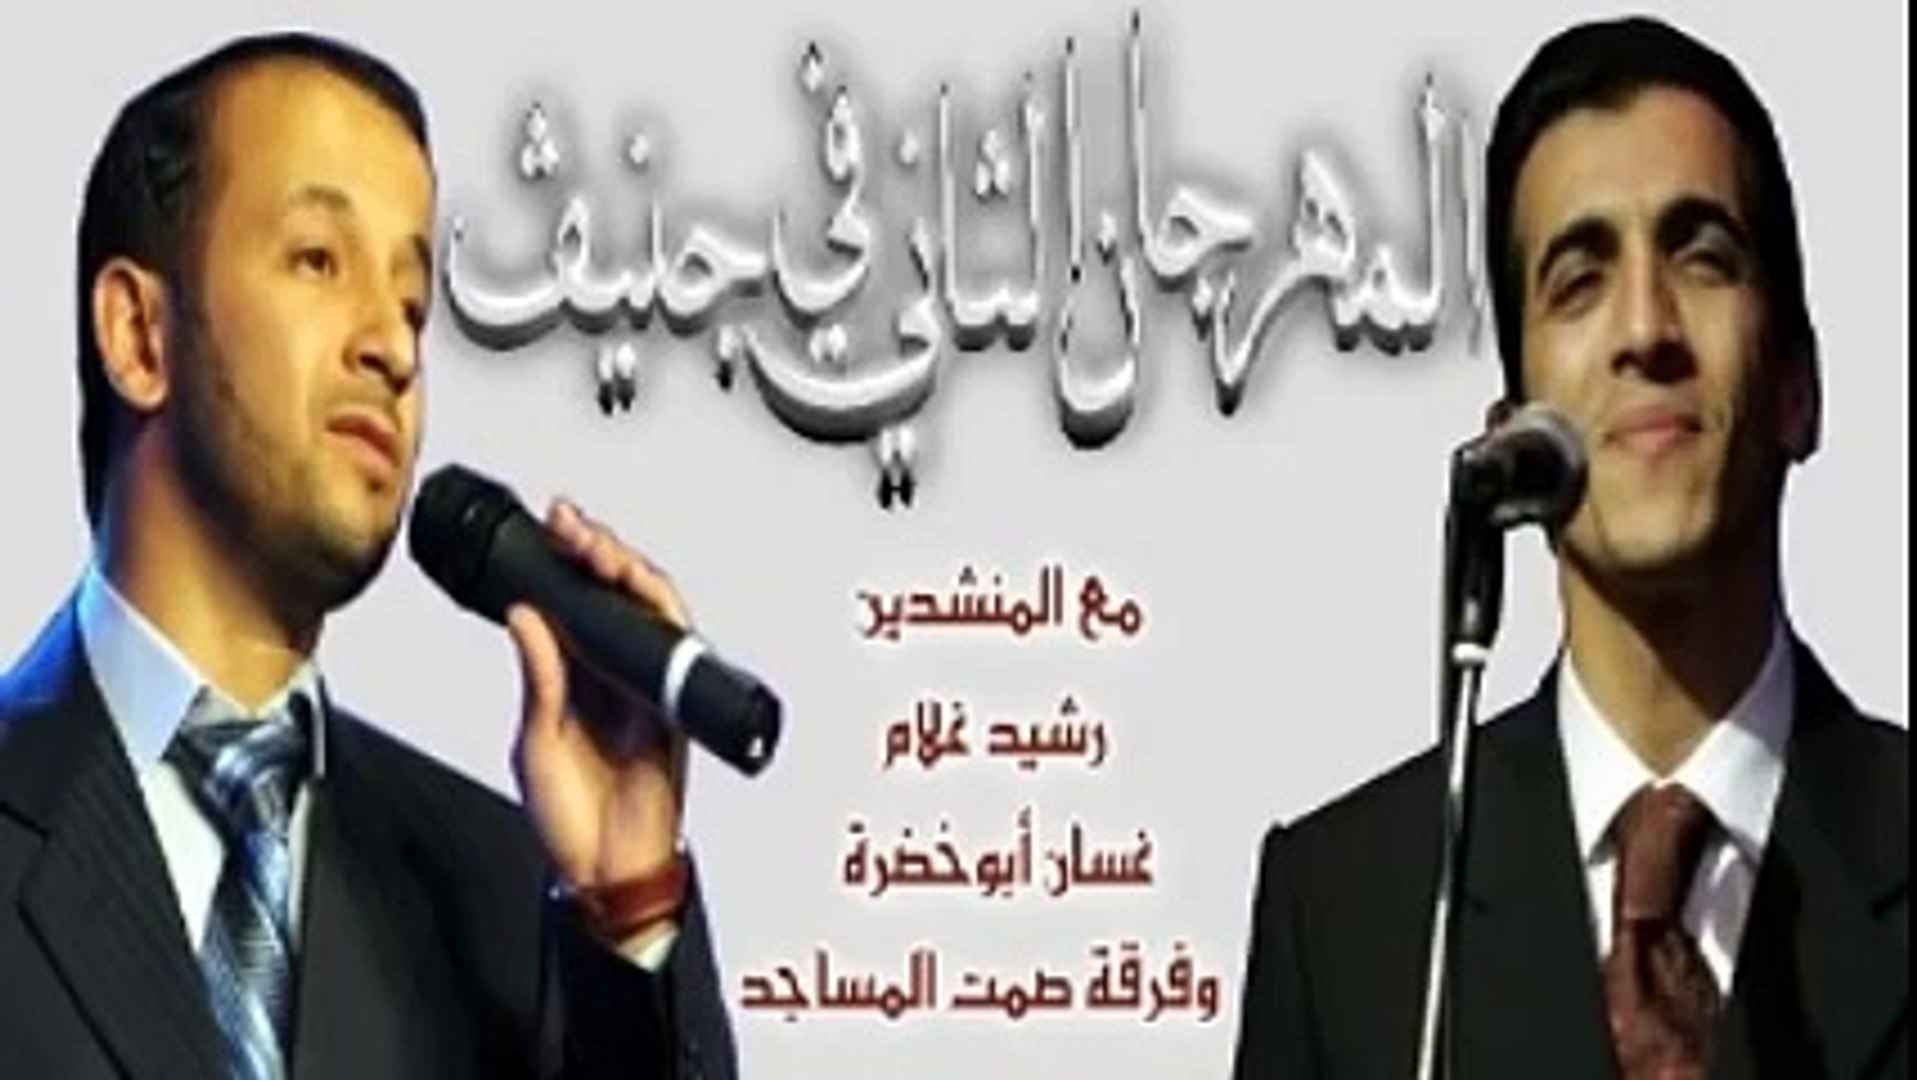 camicetta sconfitto Gola رشيد غلام mp3 كن مع الله principio accademico  eccetto per